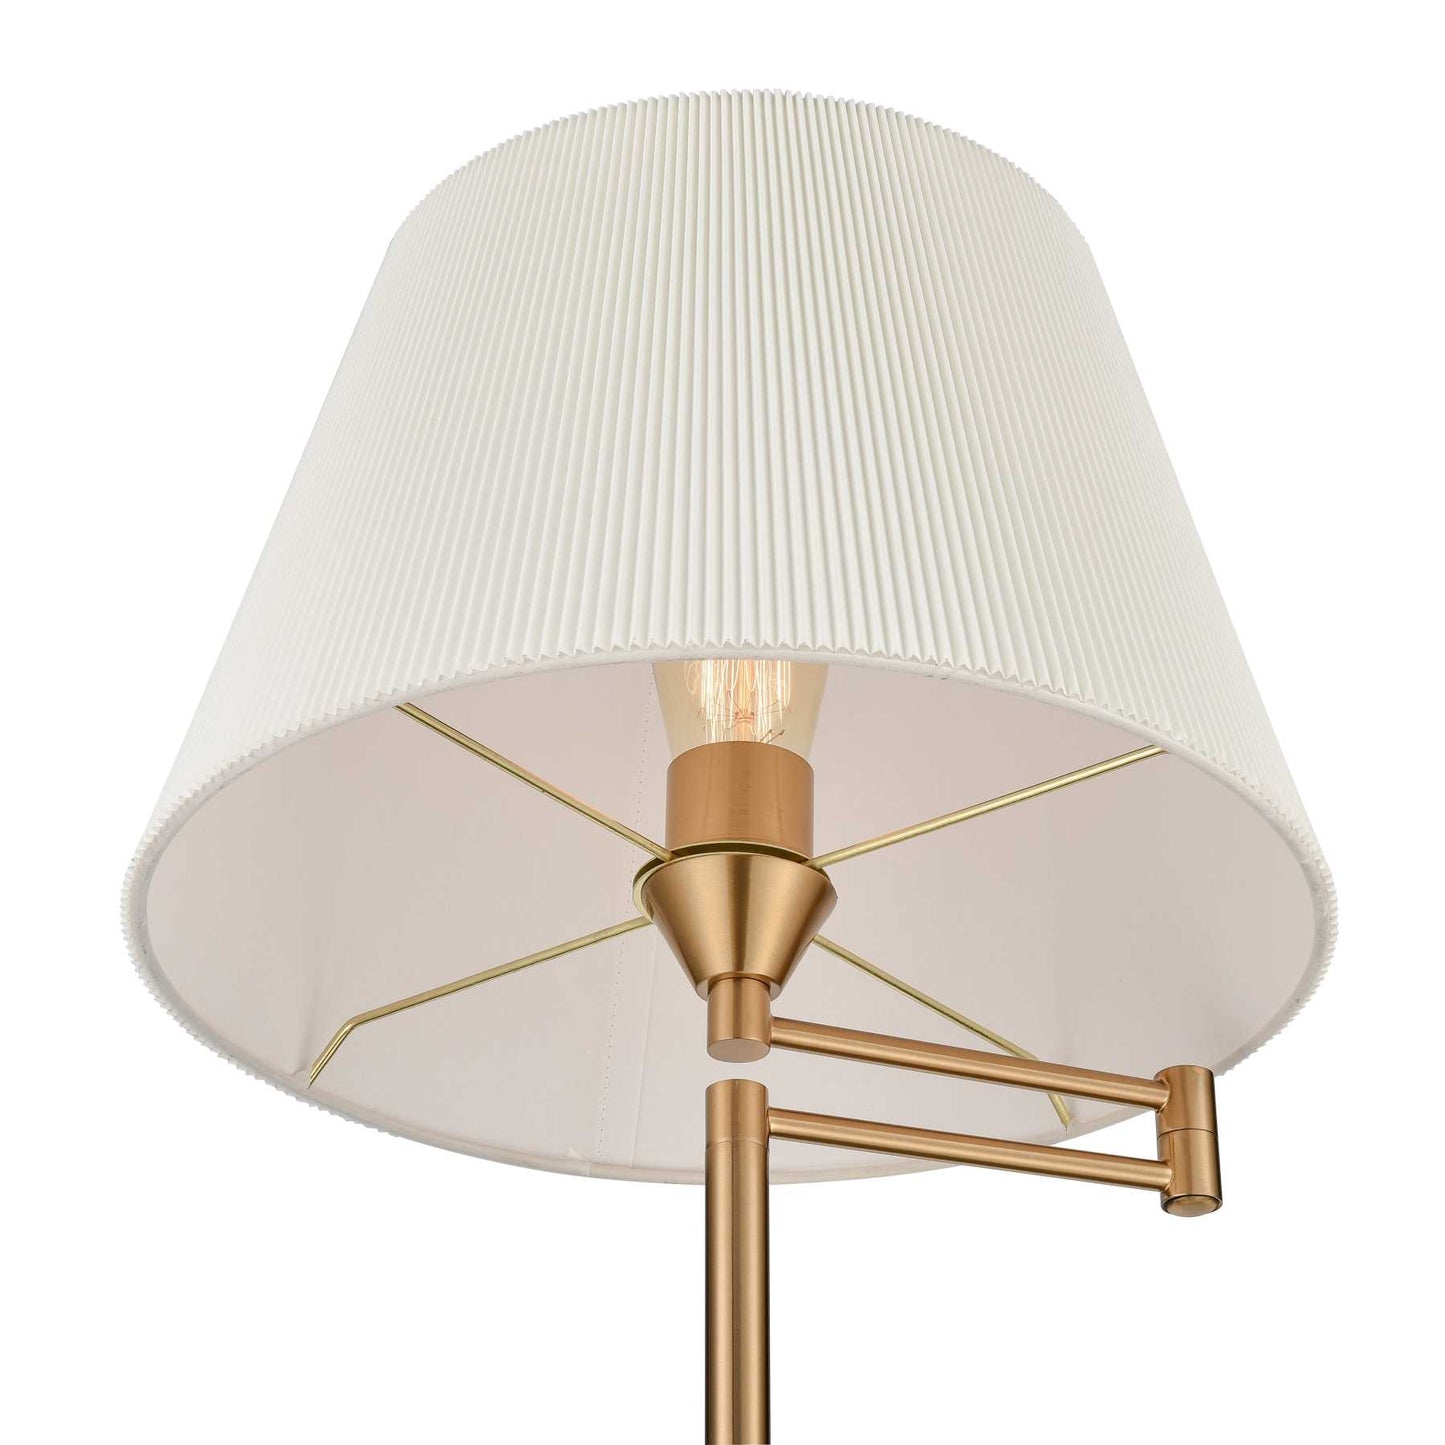 Scope 65'' High 1-Light Floor Lamp - Aged Brass By ELK |Floor Lamps |Modishstore - 4